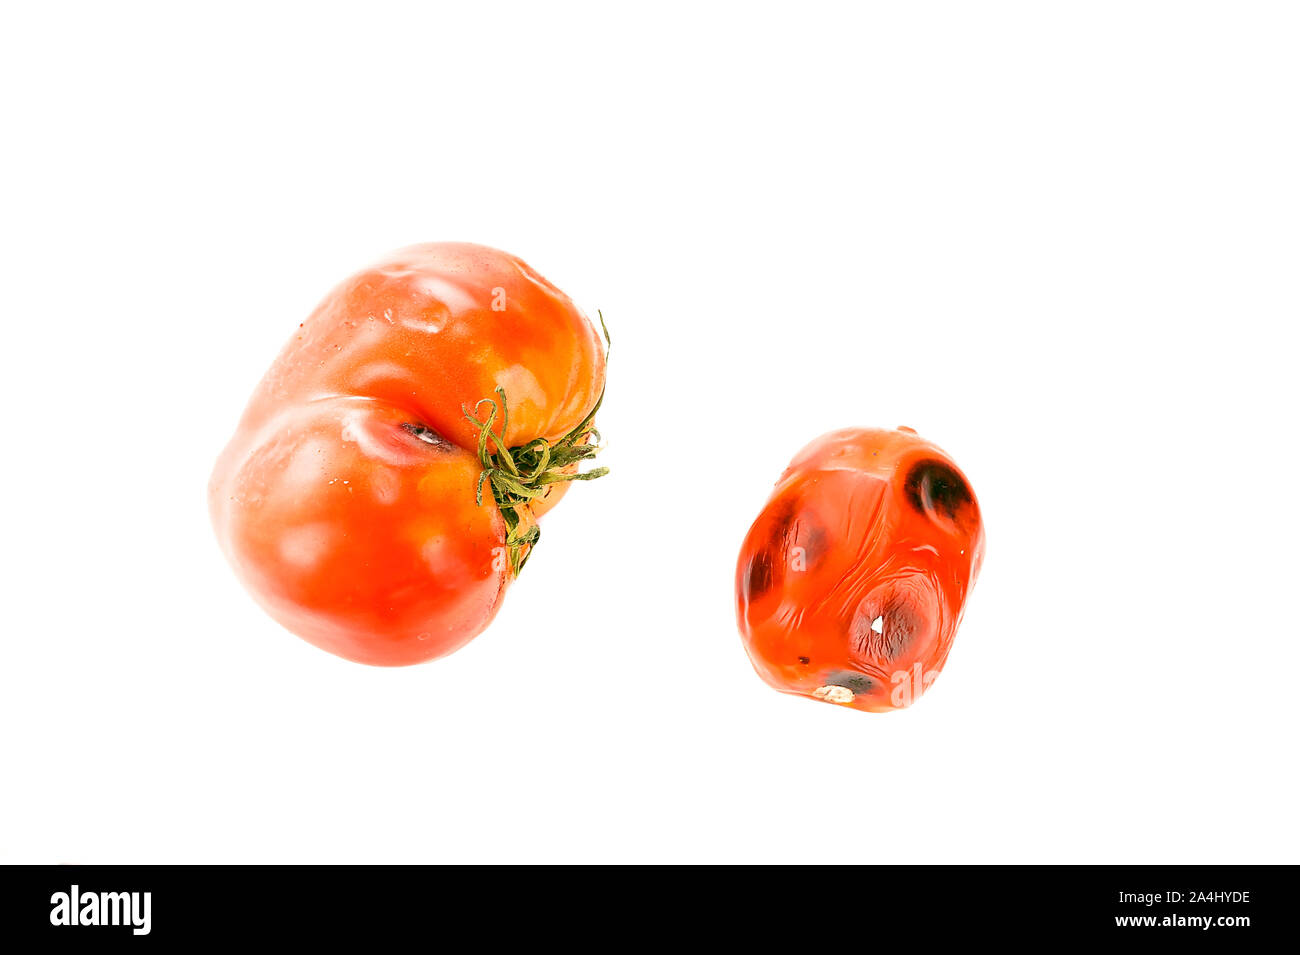 Pequeños y grandes, estropeado podrido Tomates con manchas de moho en la piel, los sépalos o Cáliz y maduración desigual aislado sobre fondo blanco. Foto de stock